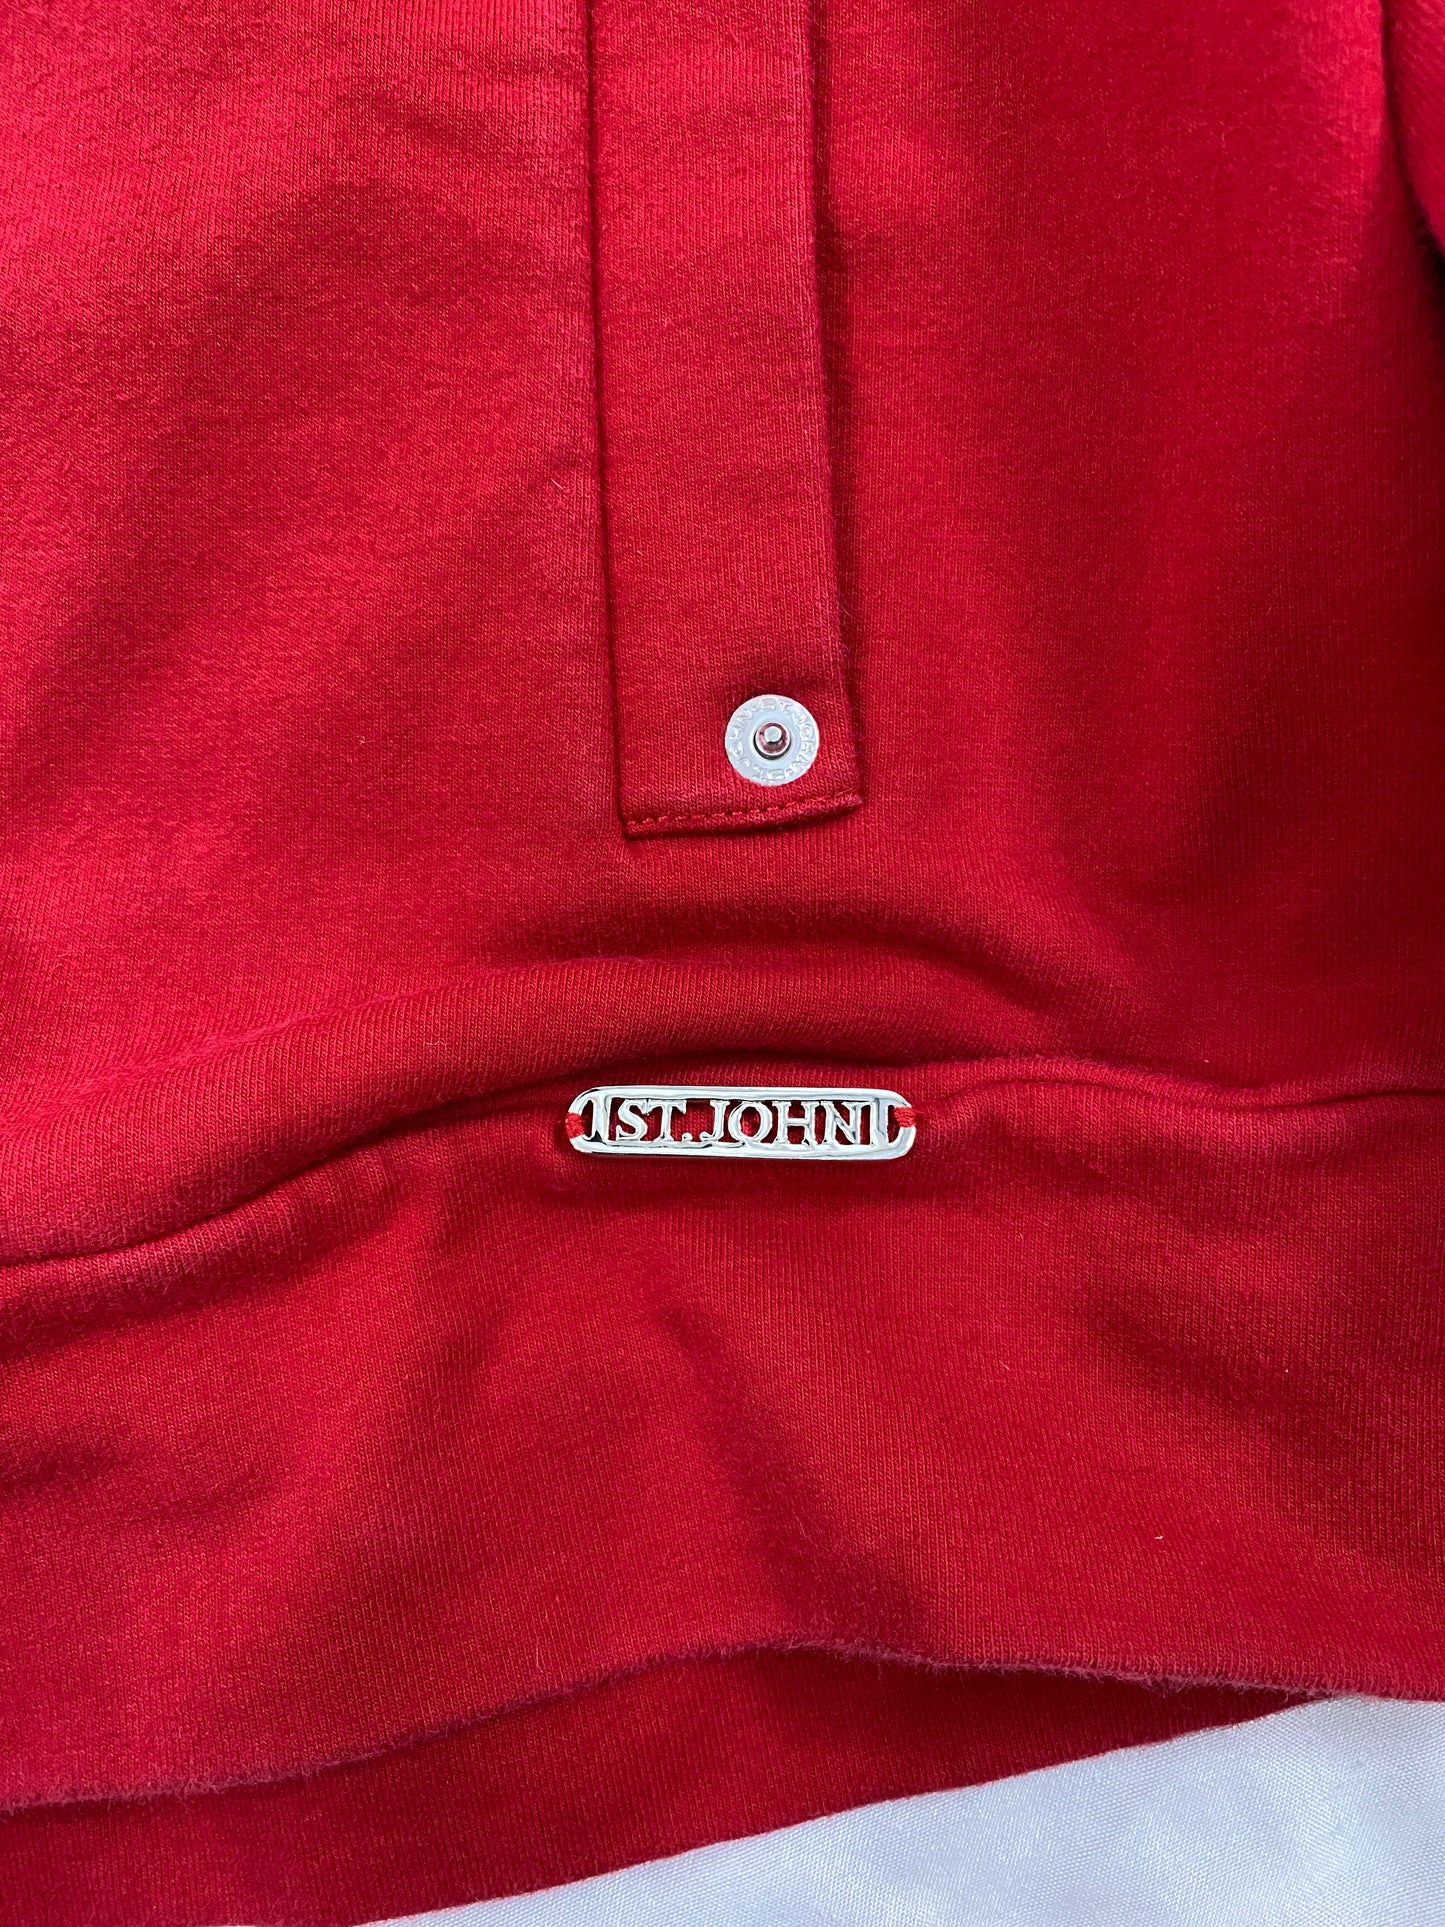 St. John Sport Jacket Red Size S SKU 000121-10